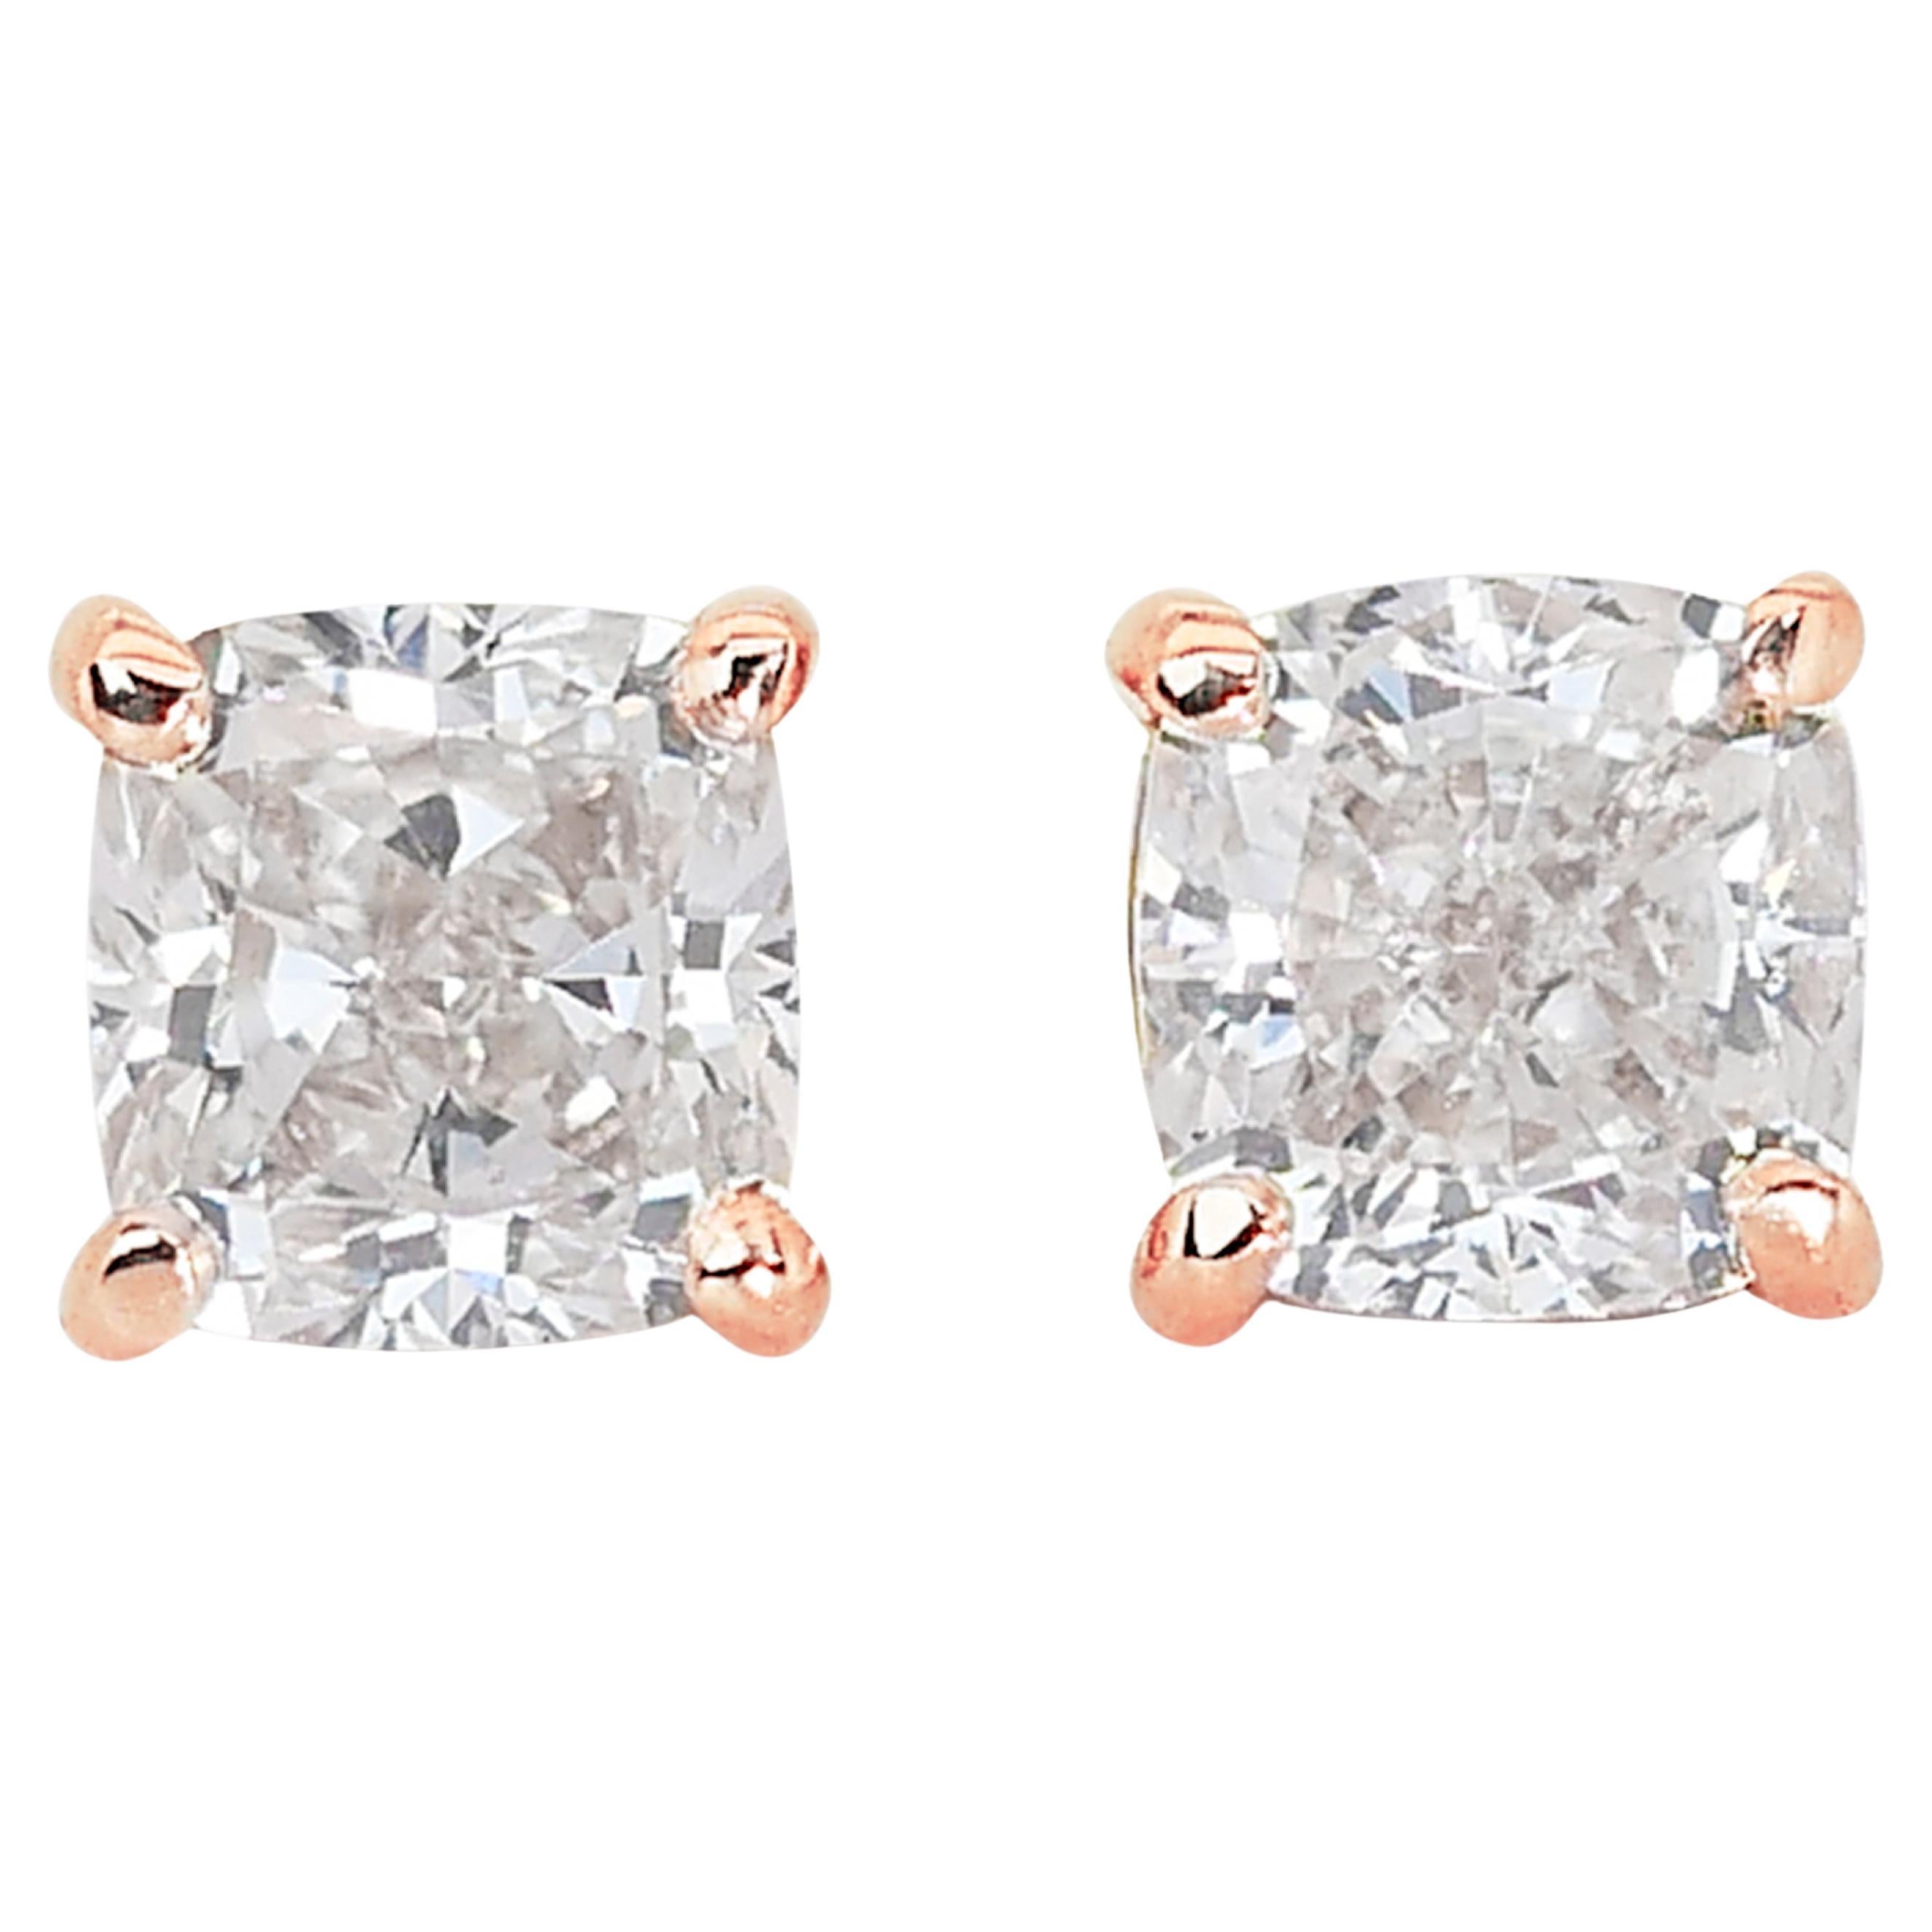 Luxuriöse 1,68ct Diamant-Ohrstecker in 14k Rose Gold - IGI zertifiziert